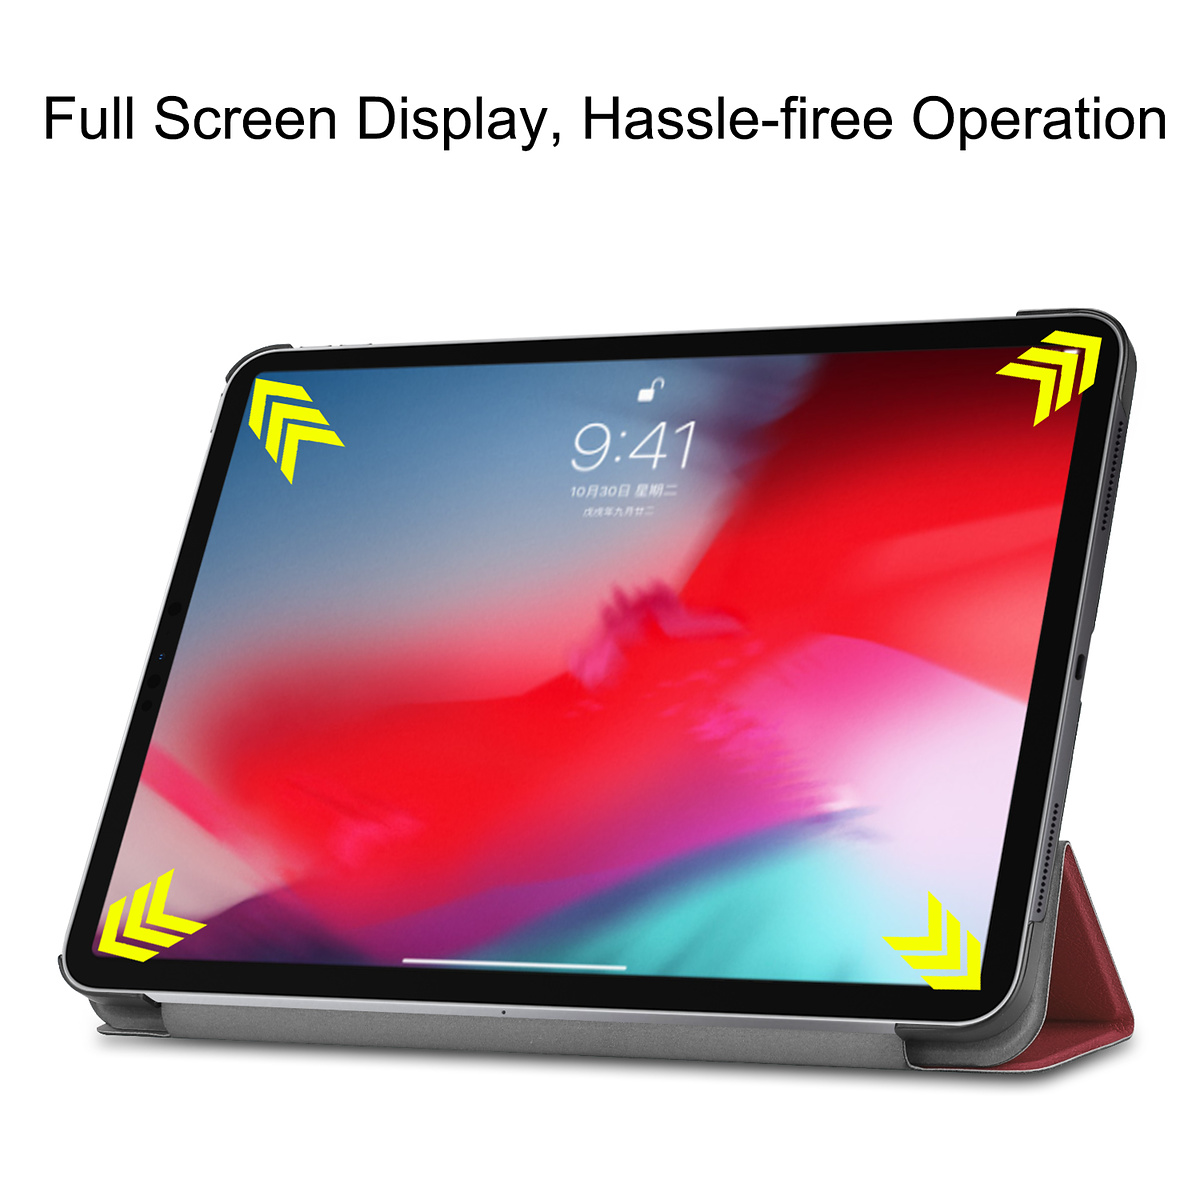 Smart cover/ställ, iPad Pro 11" (2018), röd